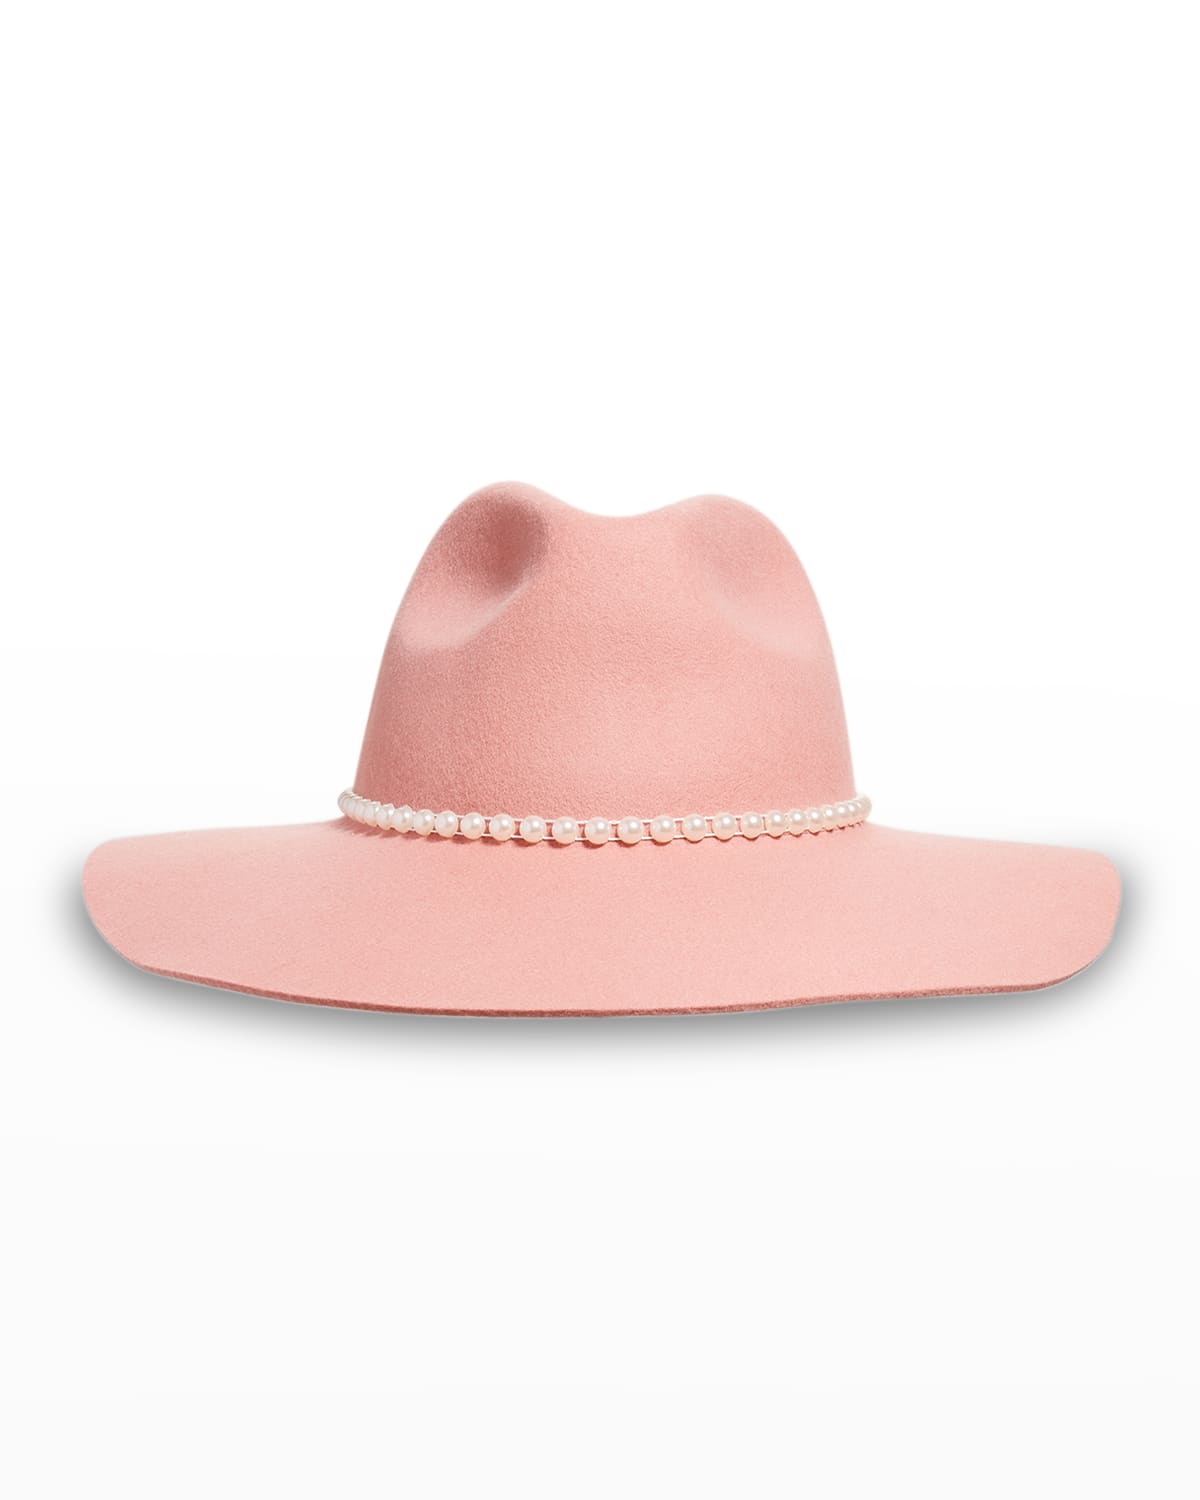 Lele Sadoughi Pearly Wool-Blend Fedora Hat